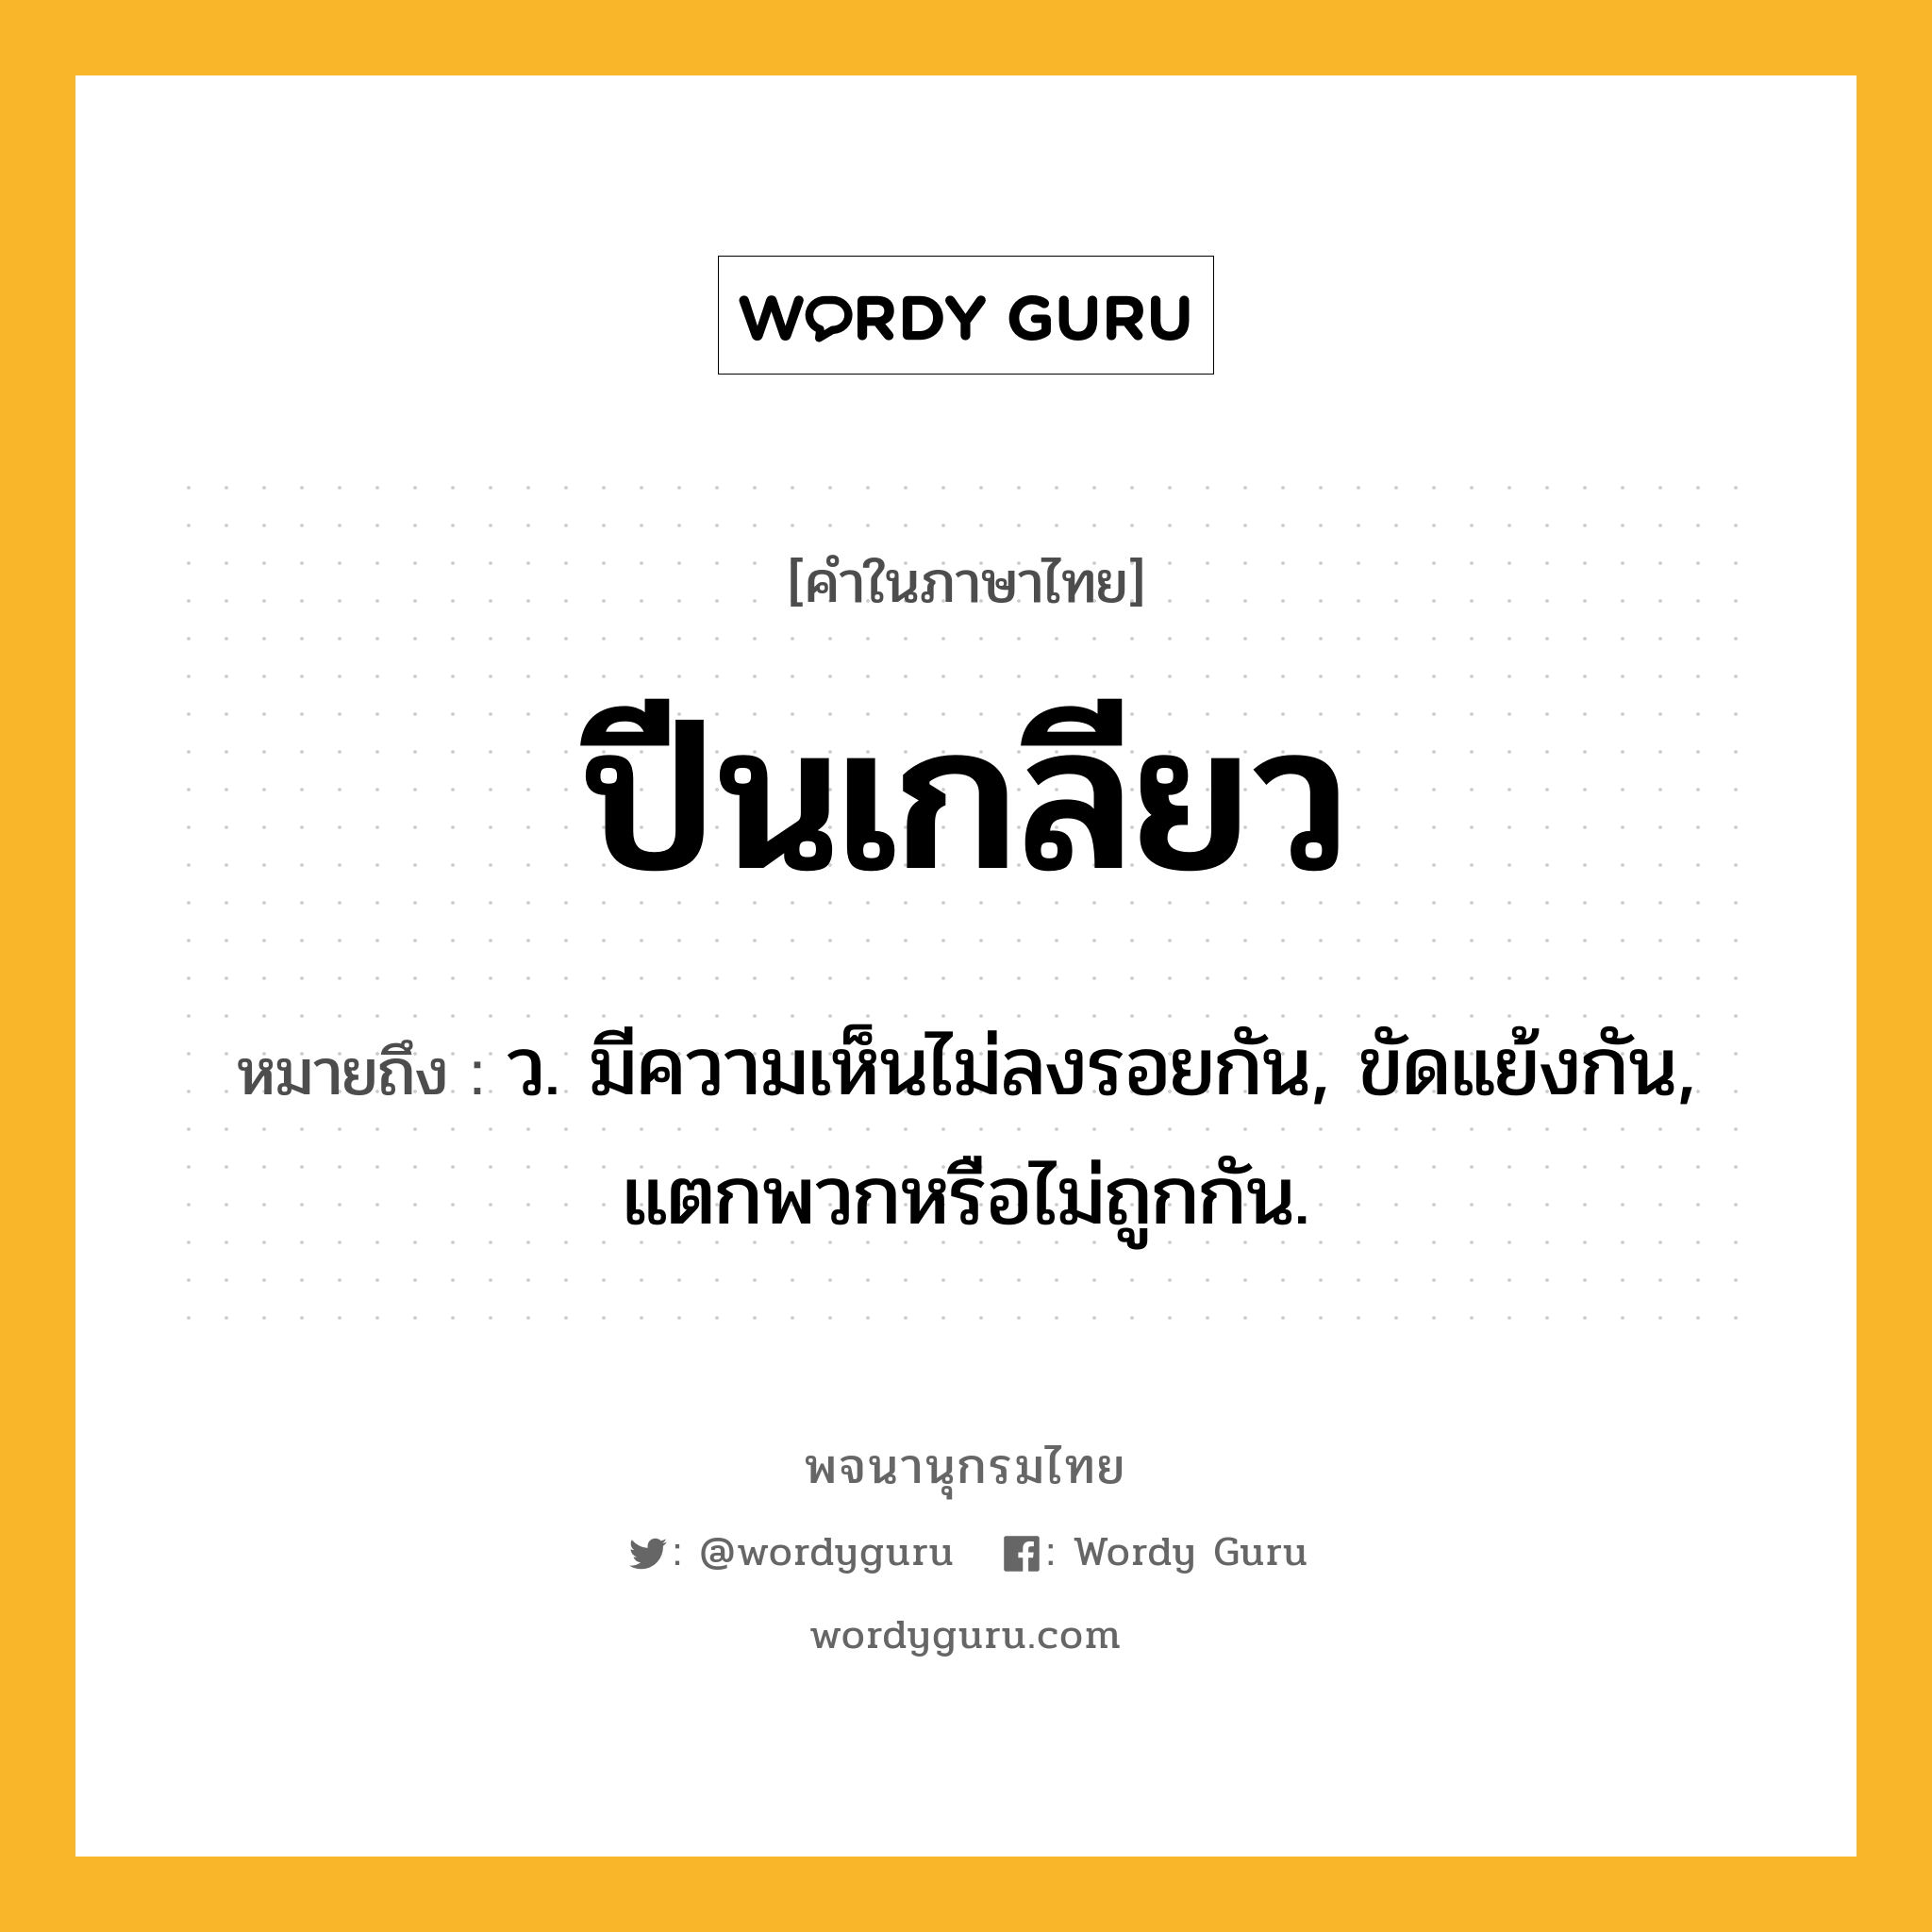 ปีนเกลียว หมายถึงอะไร?, คำในภาษาไทย ปีนเกลียว หมายถึง ว. มีความเห็นไม่ลงรอยกัน, ขัดแย้งกัน, แตกพวกหรือไม่ถูกกัน.